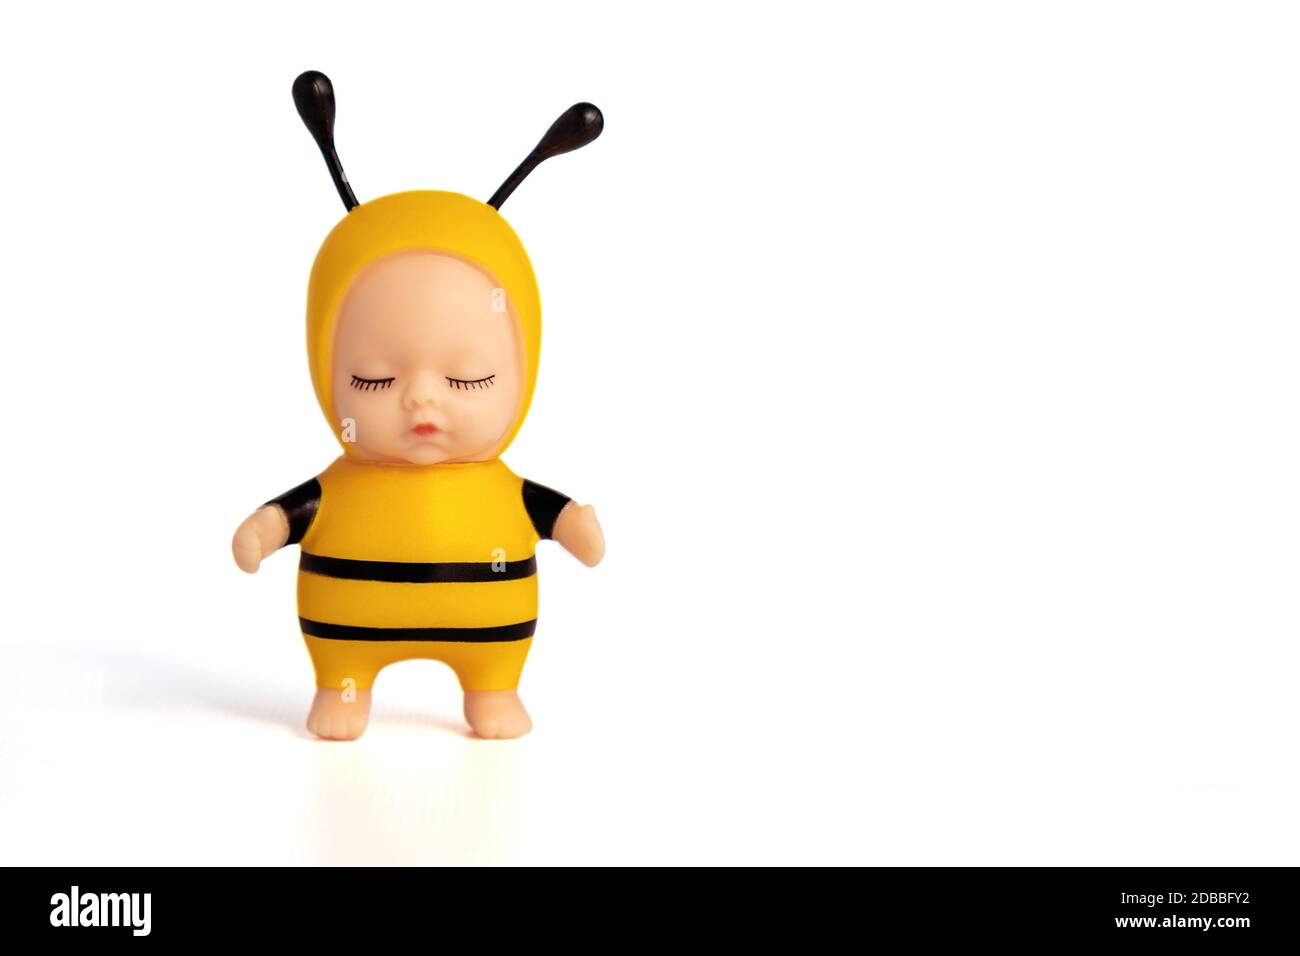 Bambola carina in costume d'ape con occhi chiusi. Si trova su uno sfondo bianco isolato. Un giocattolo adorabile per un regalo o un gioco per bambini. Messa a fuoco morbida. Foto Stock